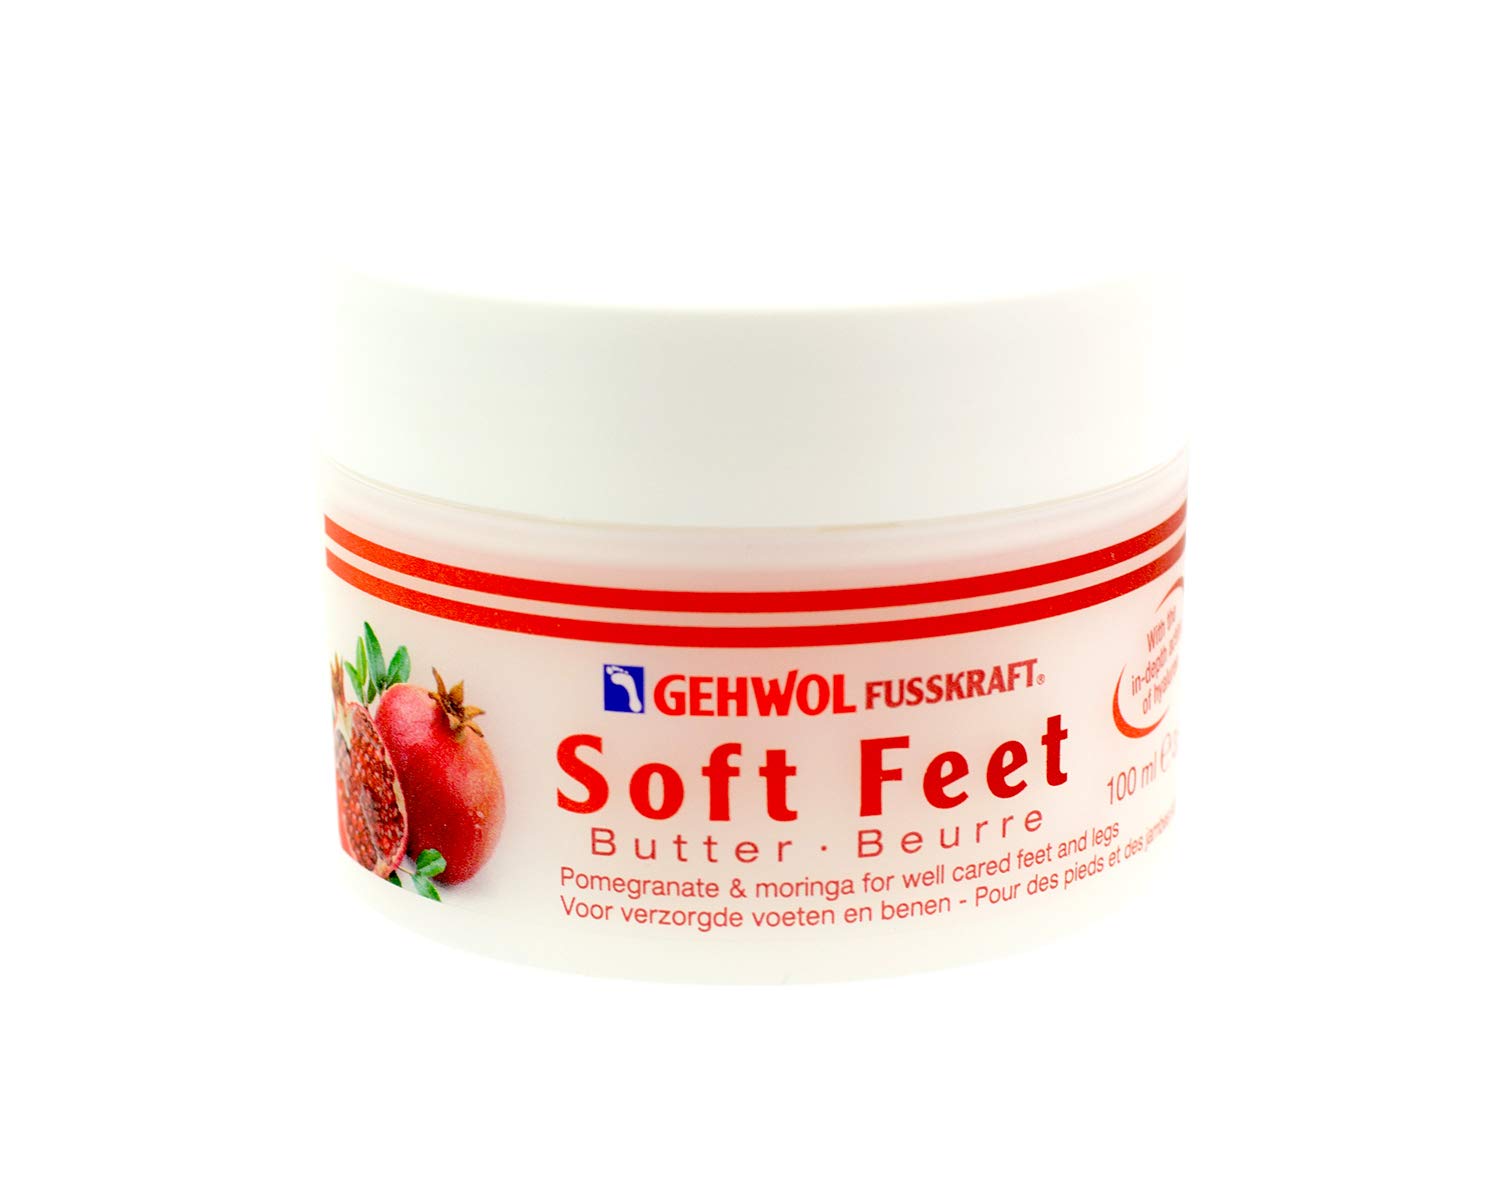 GEHWOL Soft Feet Butter, 3.5 oz.